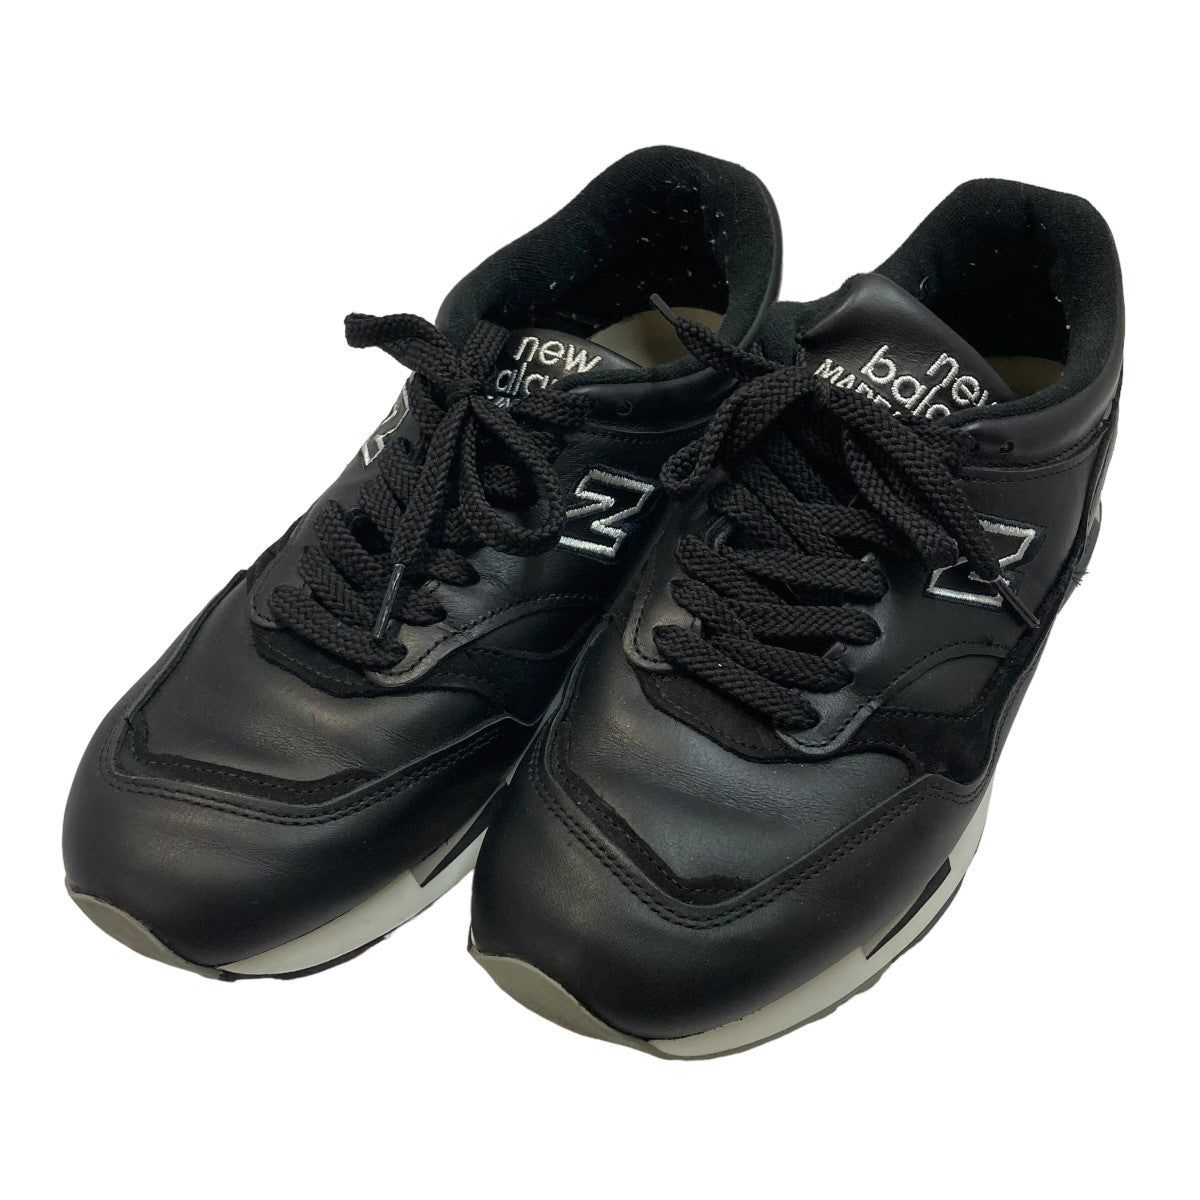 【爆買い定番】New Balance M1500(BK) UK製 26.0cm オマケ付き 靴